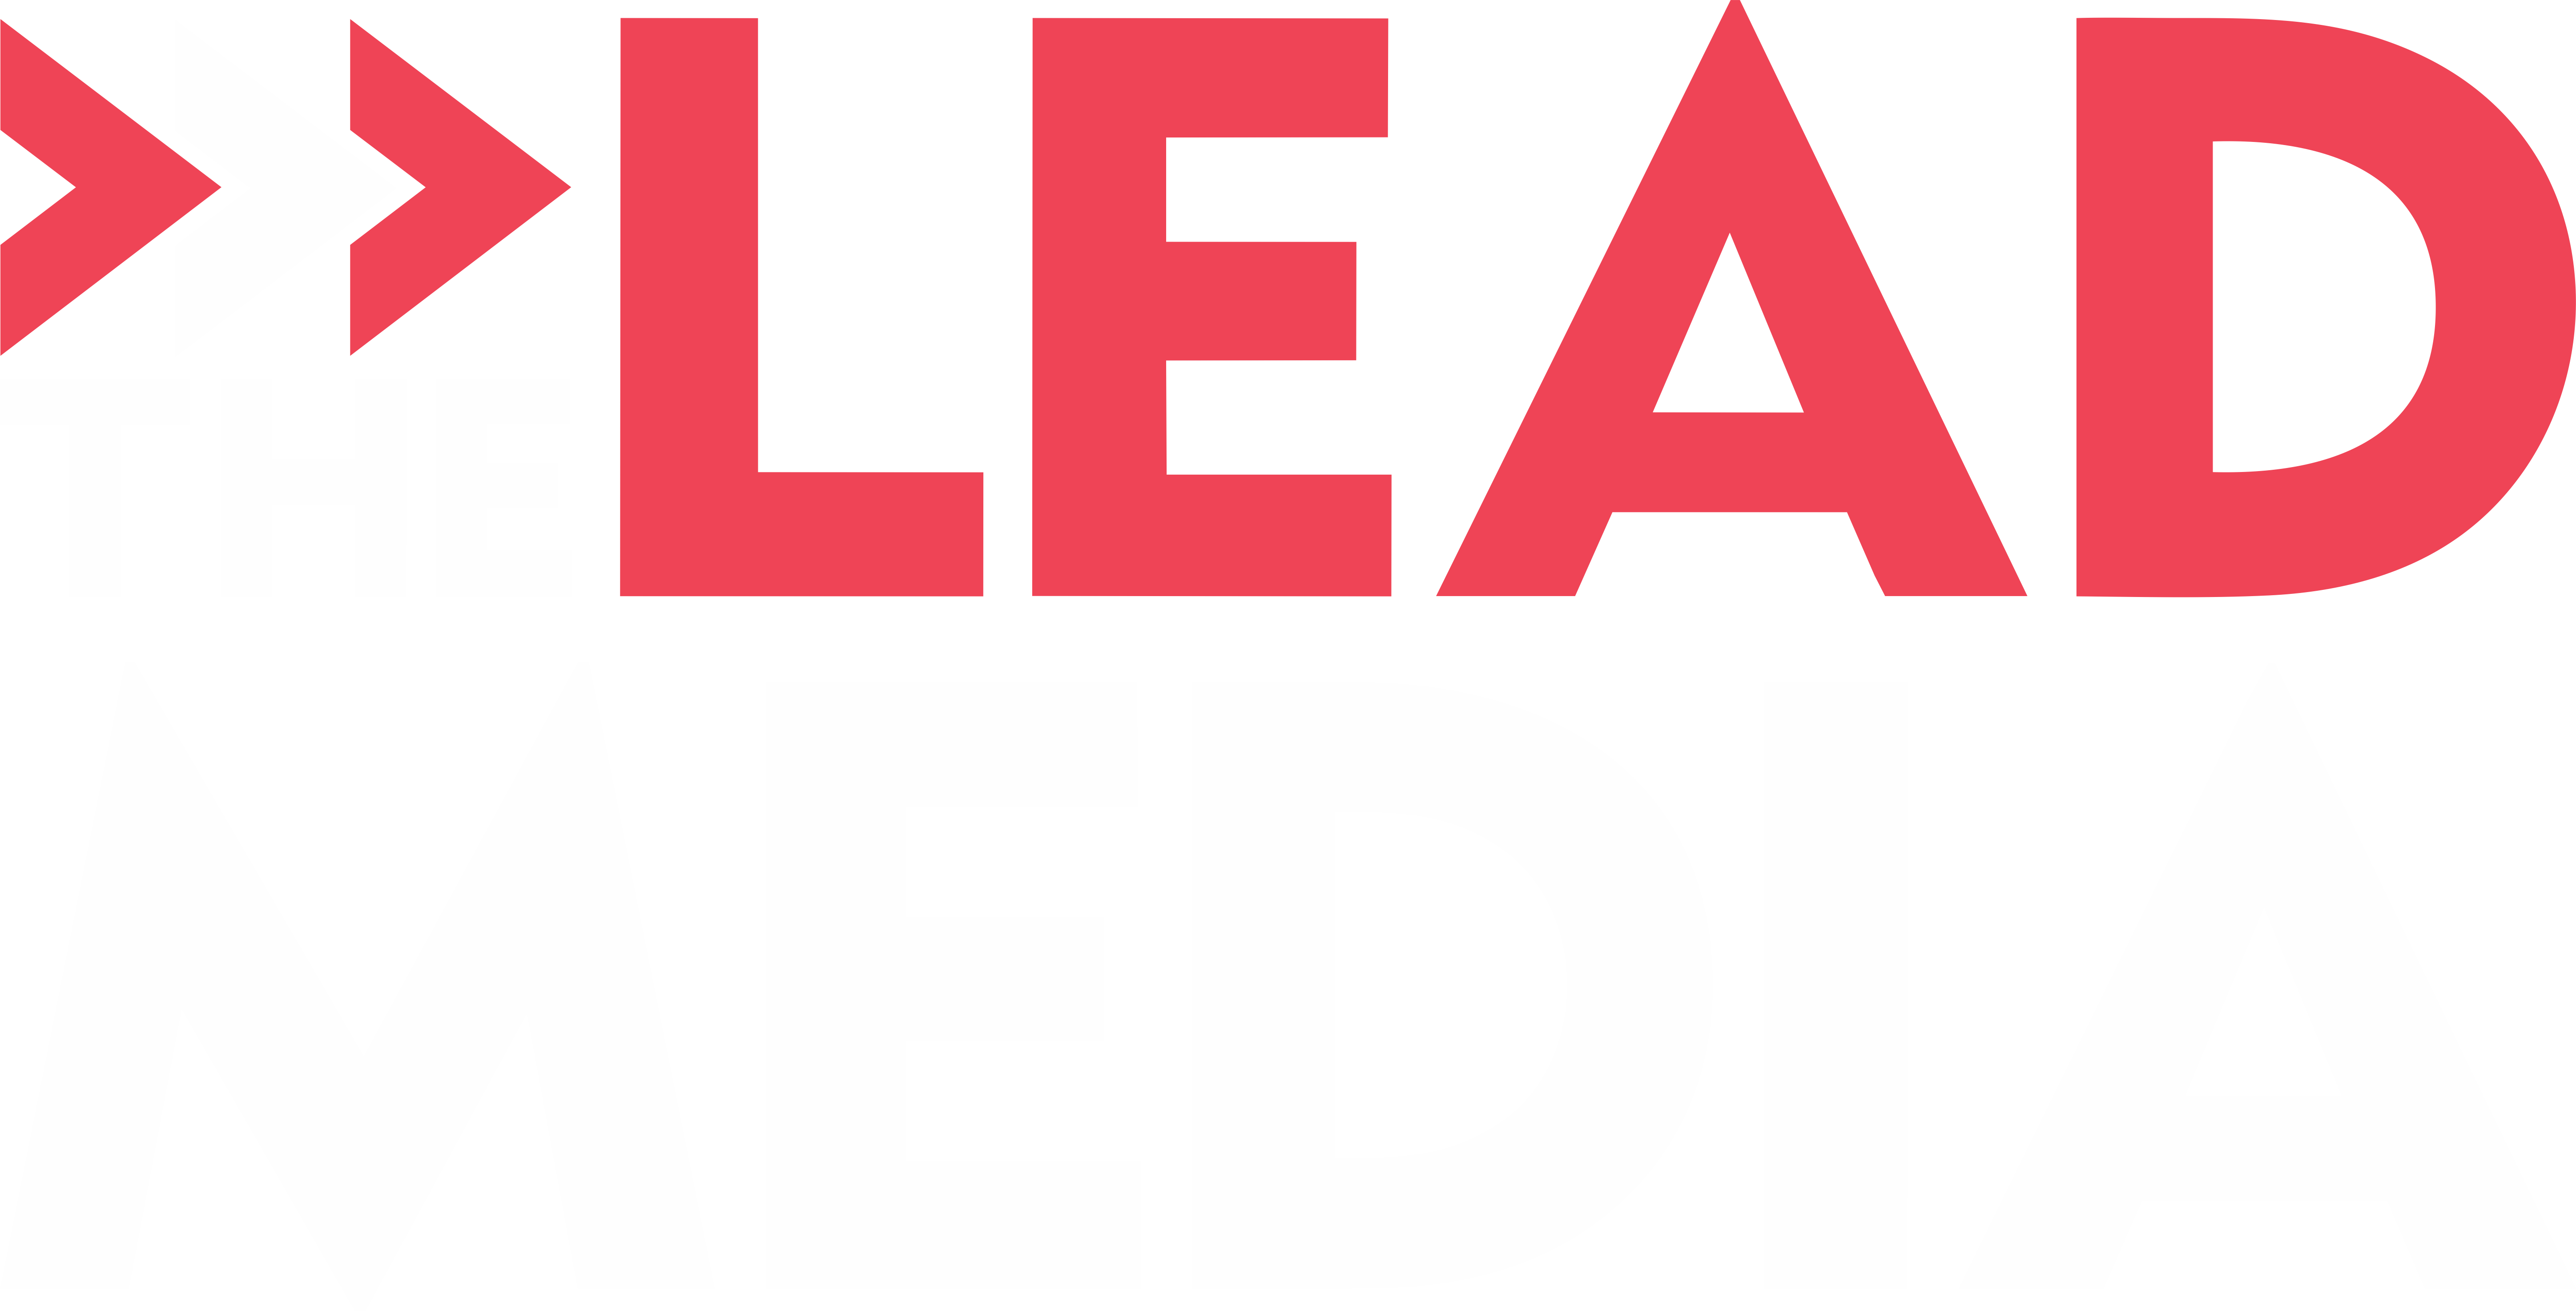 TheLeadMedia